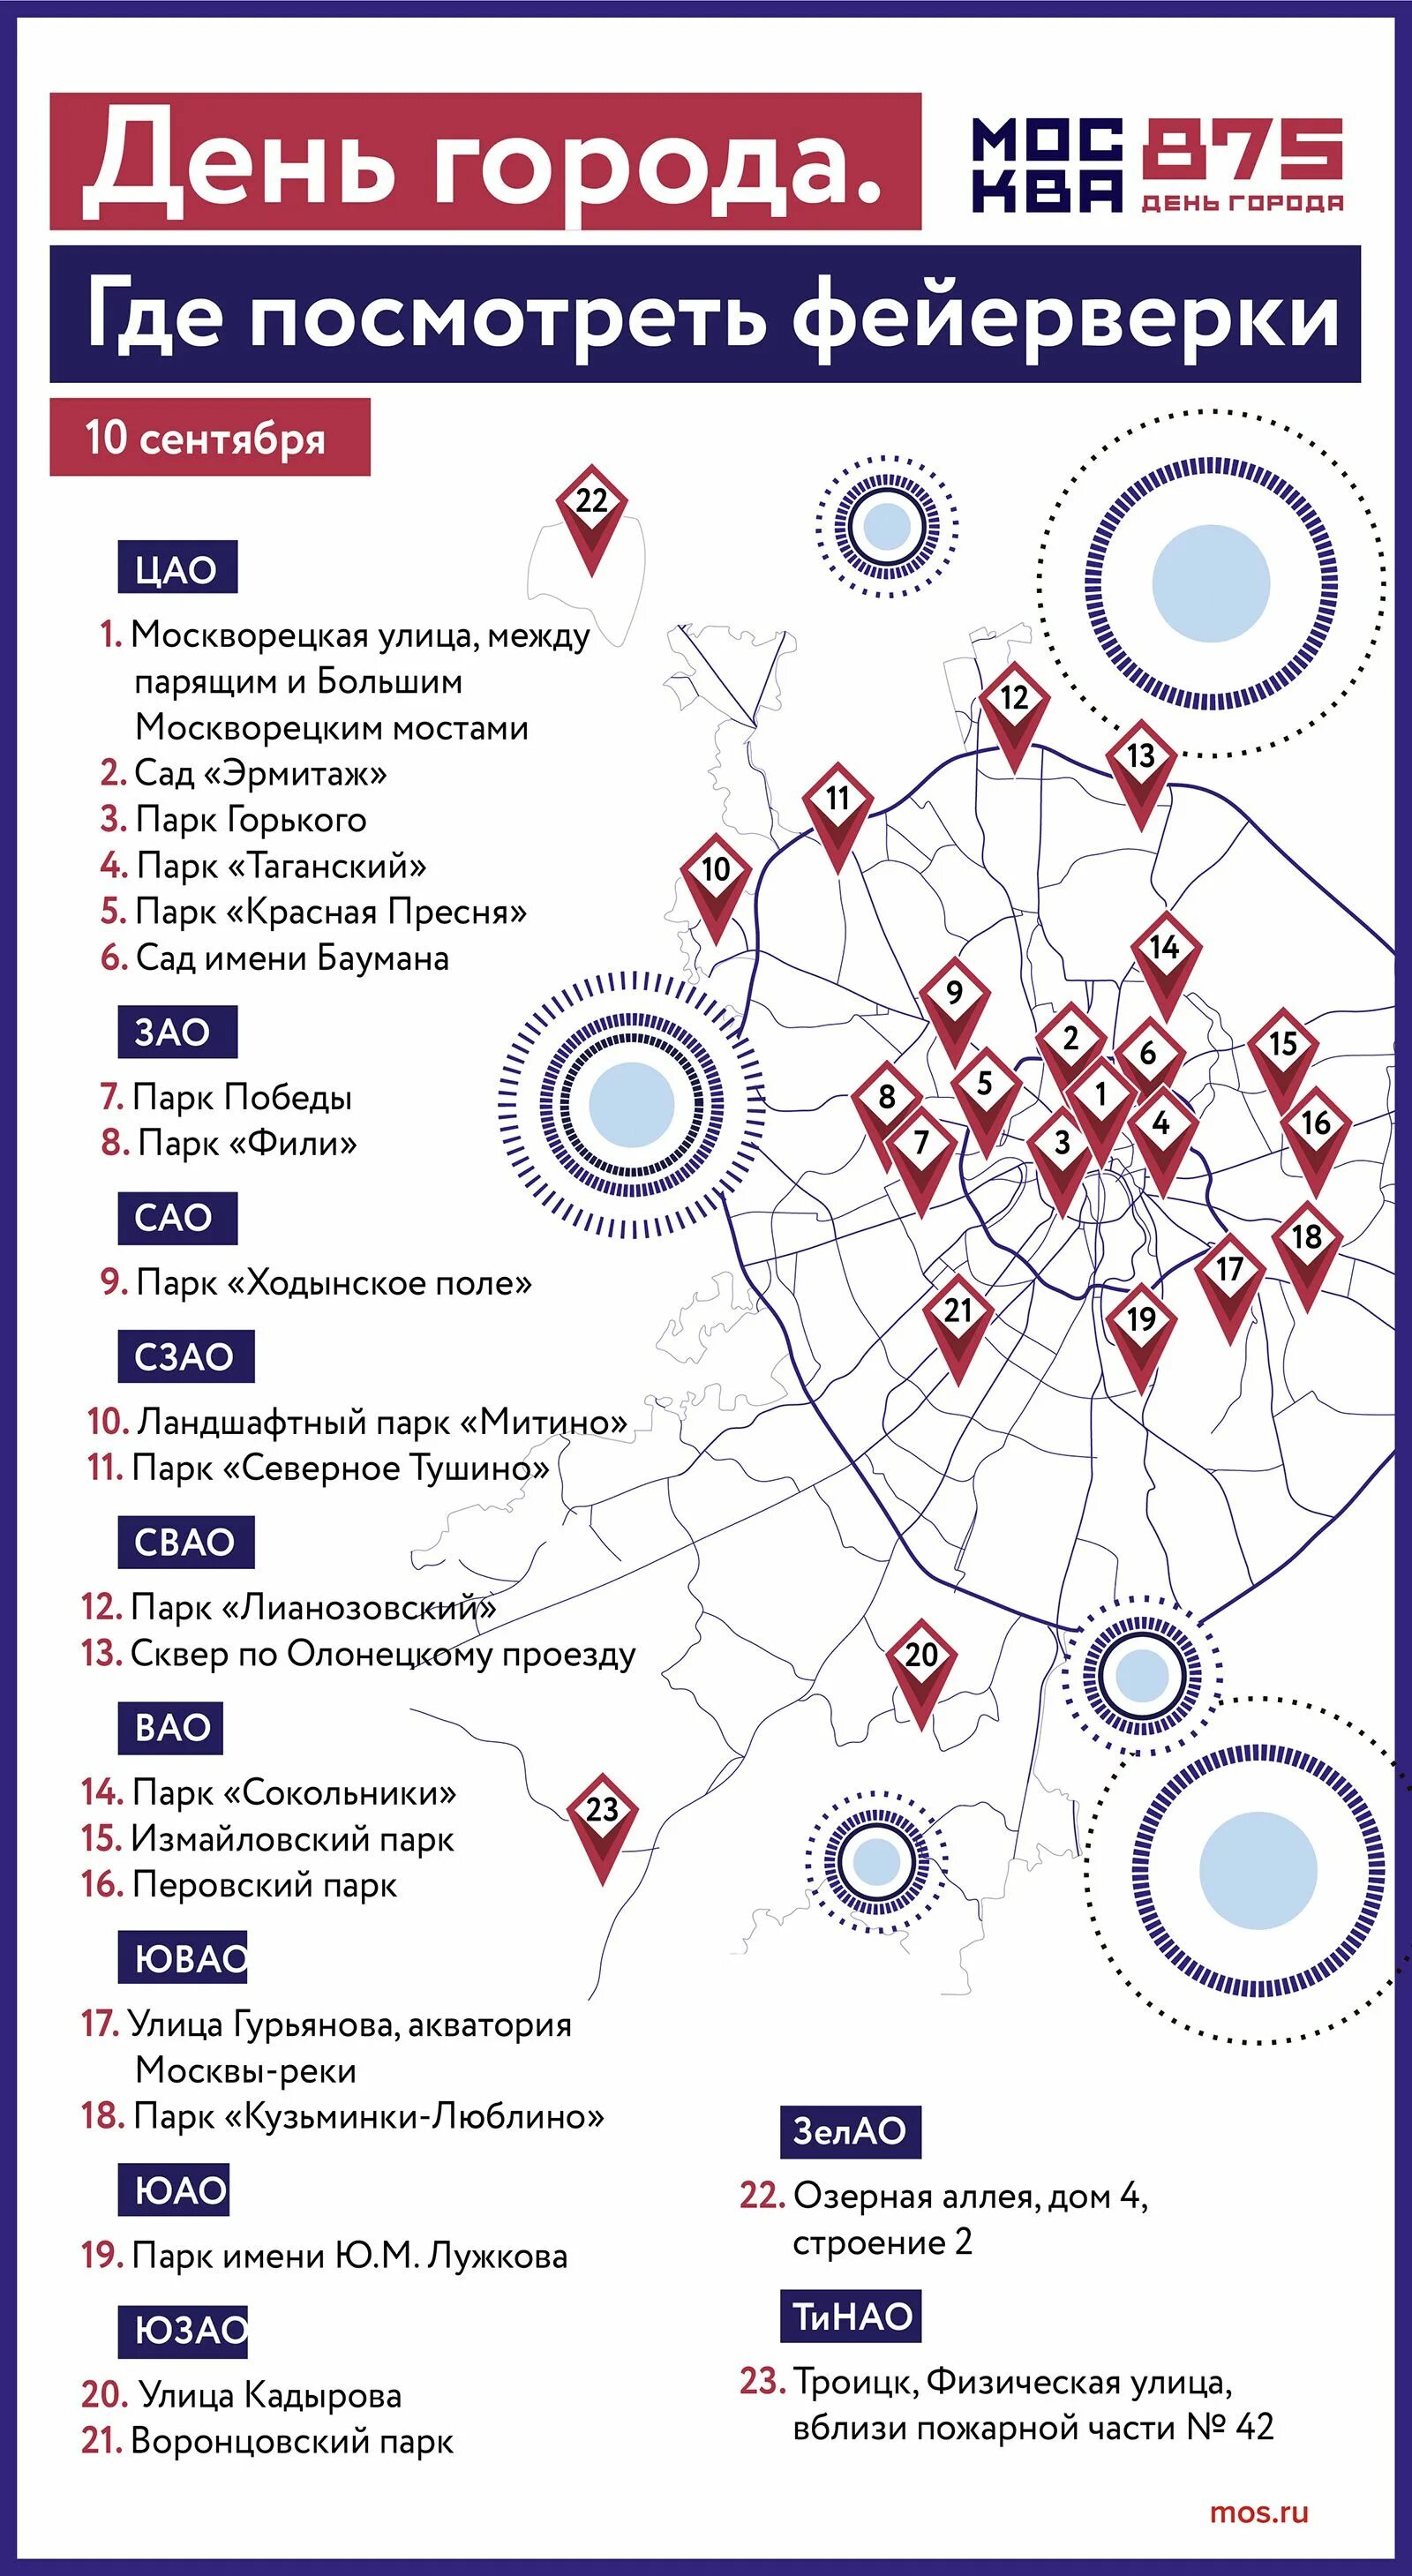 Салют на день города в Москве 2022. Точки салюта. Точки салюта на карте Москвы. Карта салютов в Москве.